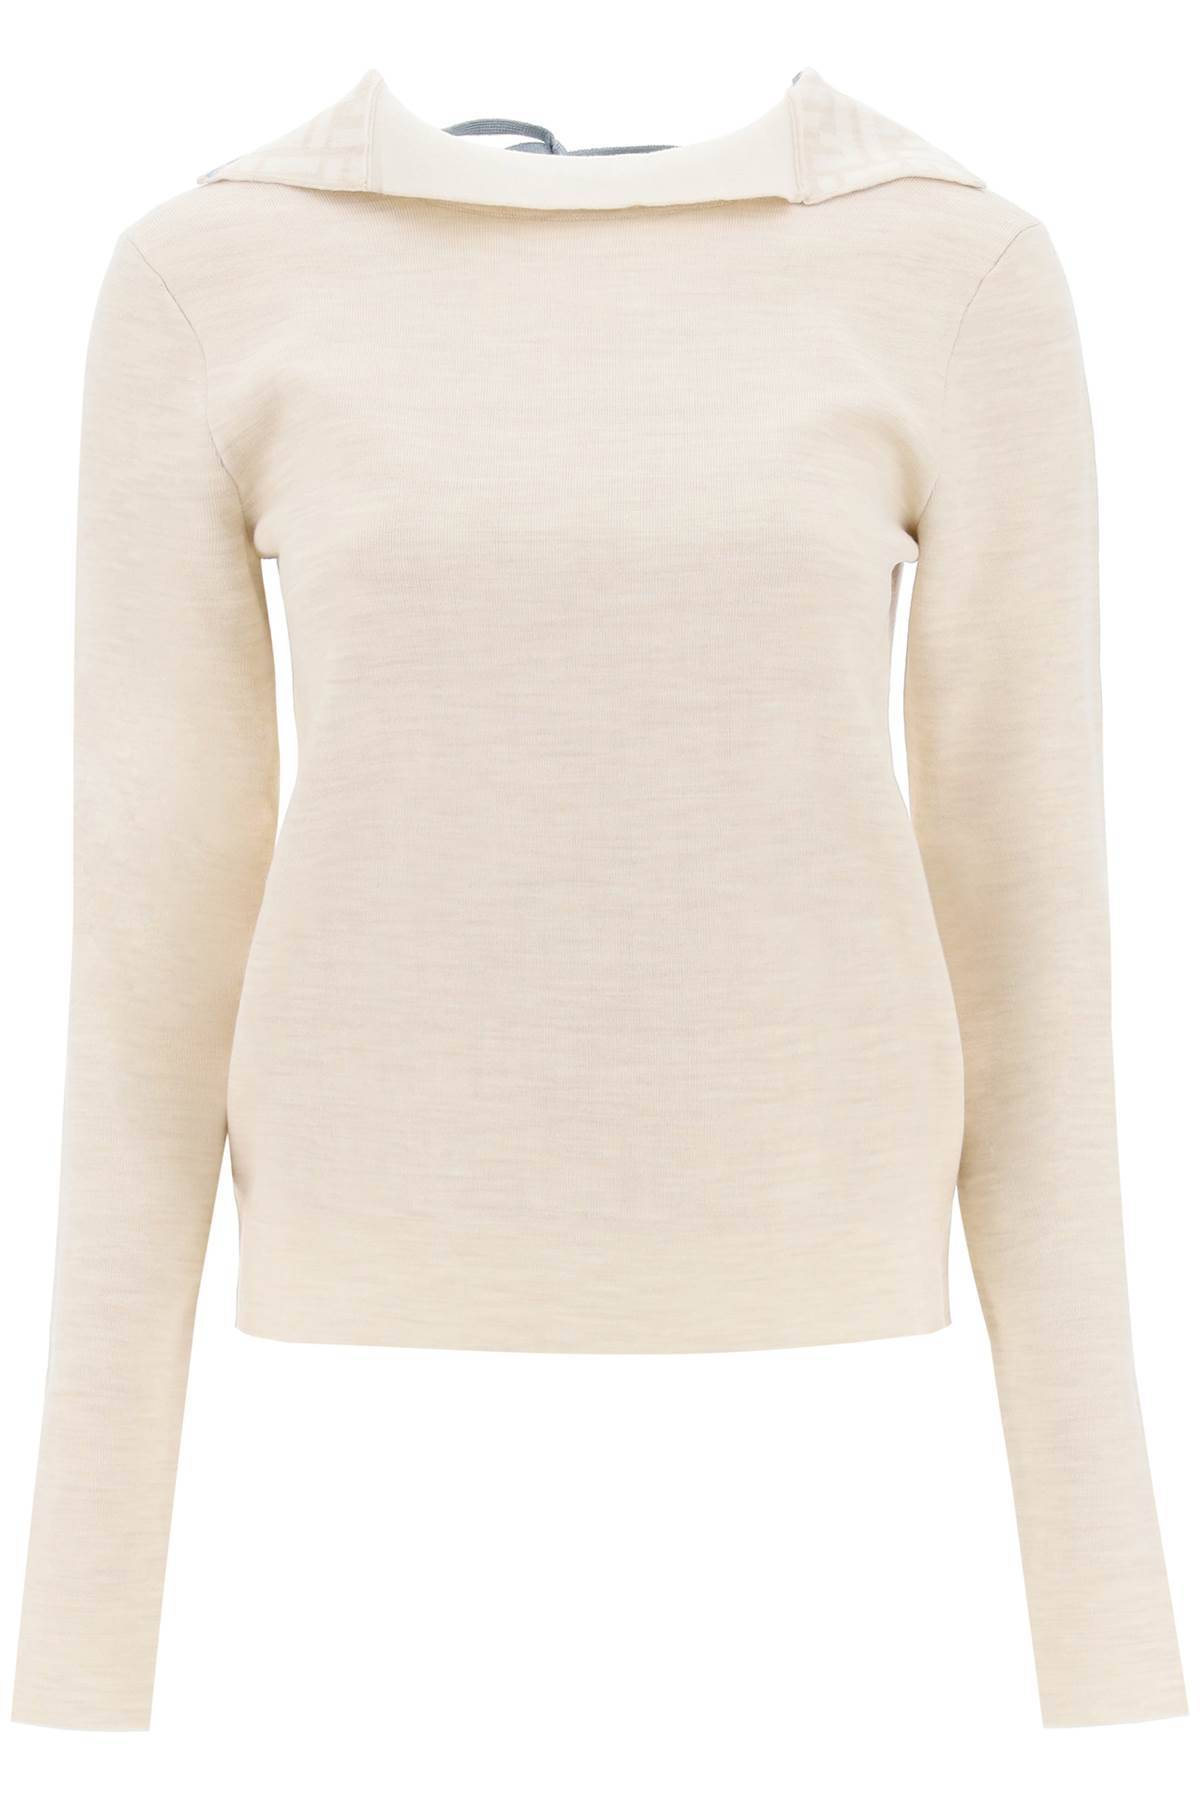 Fendi Wool Turtleneck Sweater In Beige